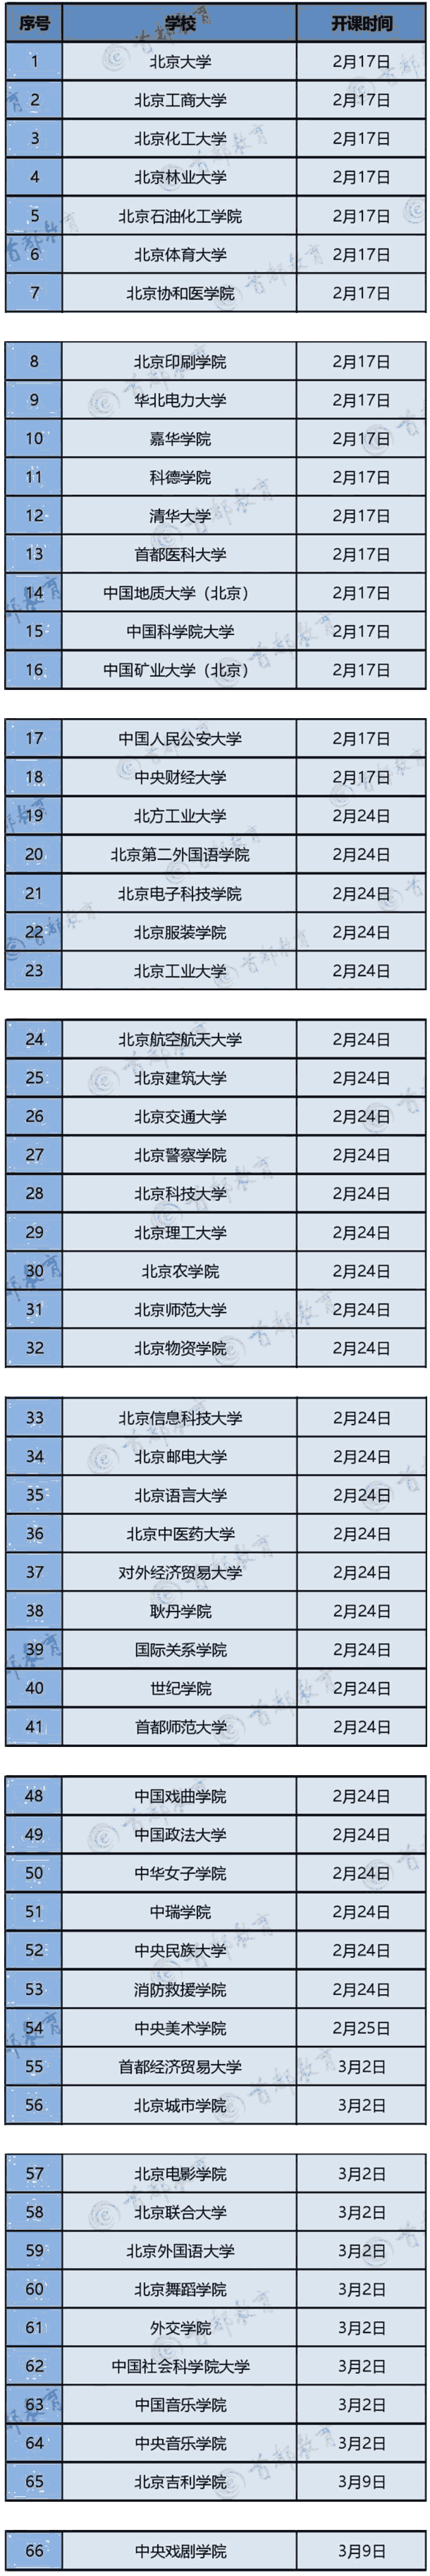 北京高校将网上授课：教学时间表公布（清单）